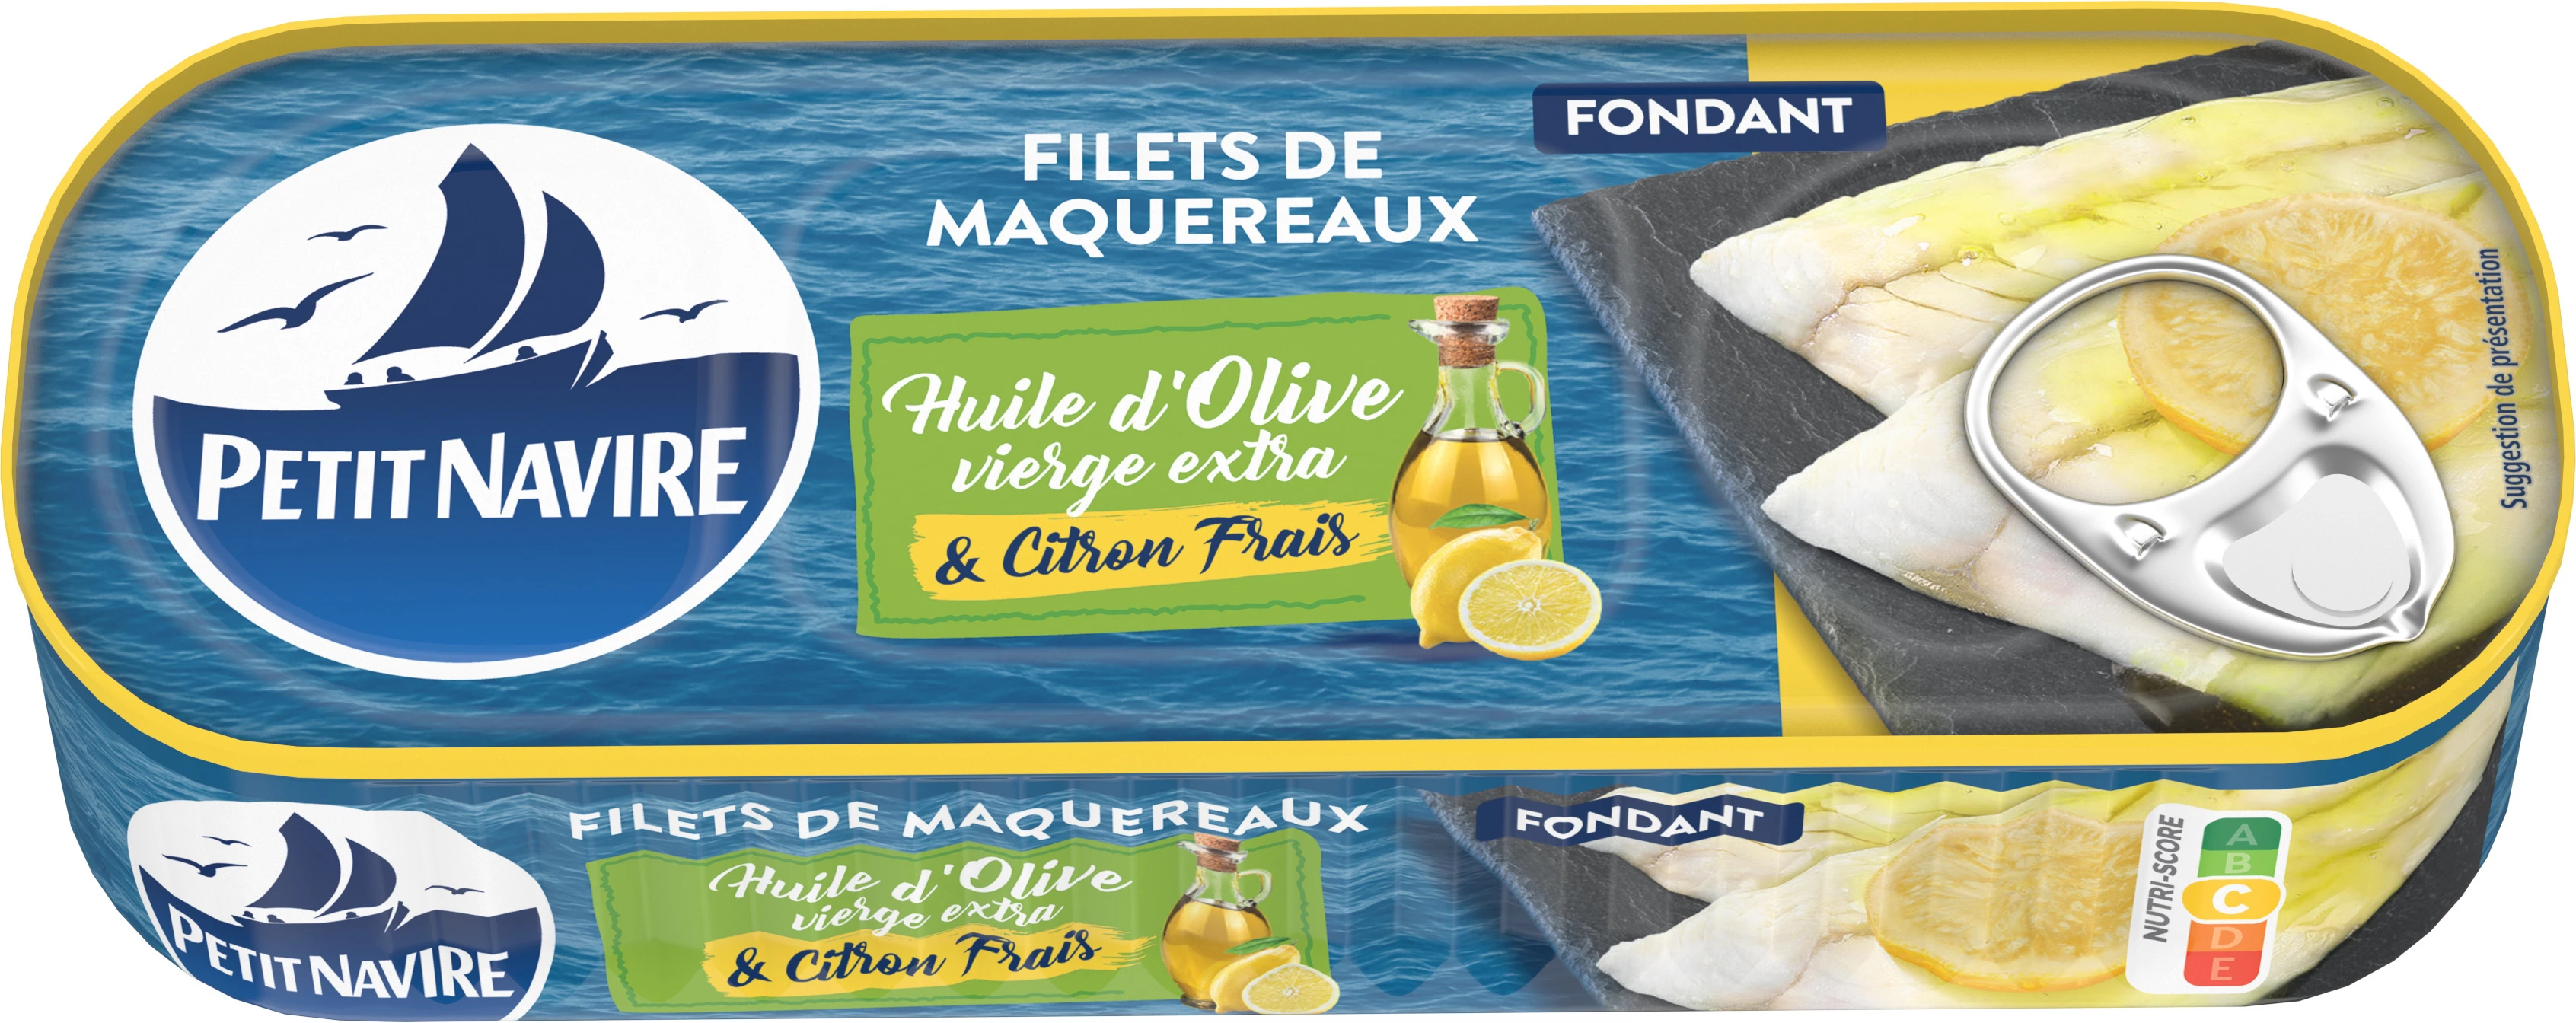 Filets de Maquereaux Huiles d'Olive et Citron Frais, 145g - PATIT NAVIRE